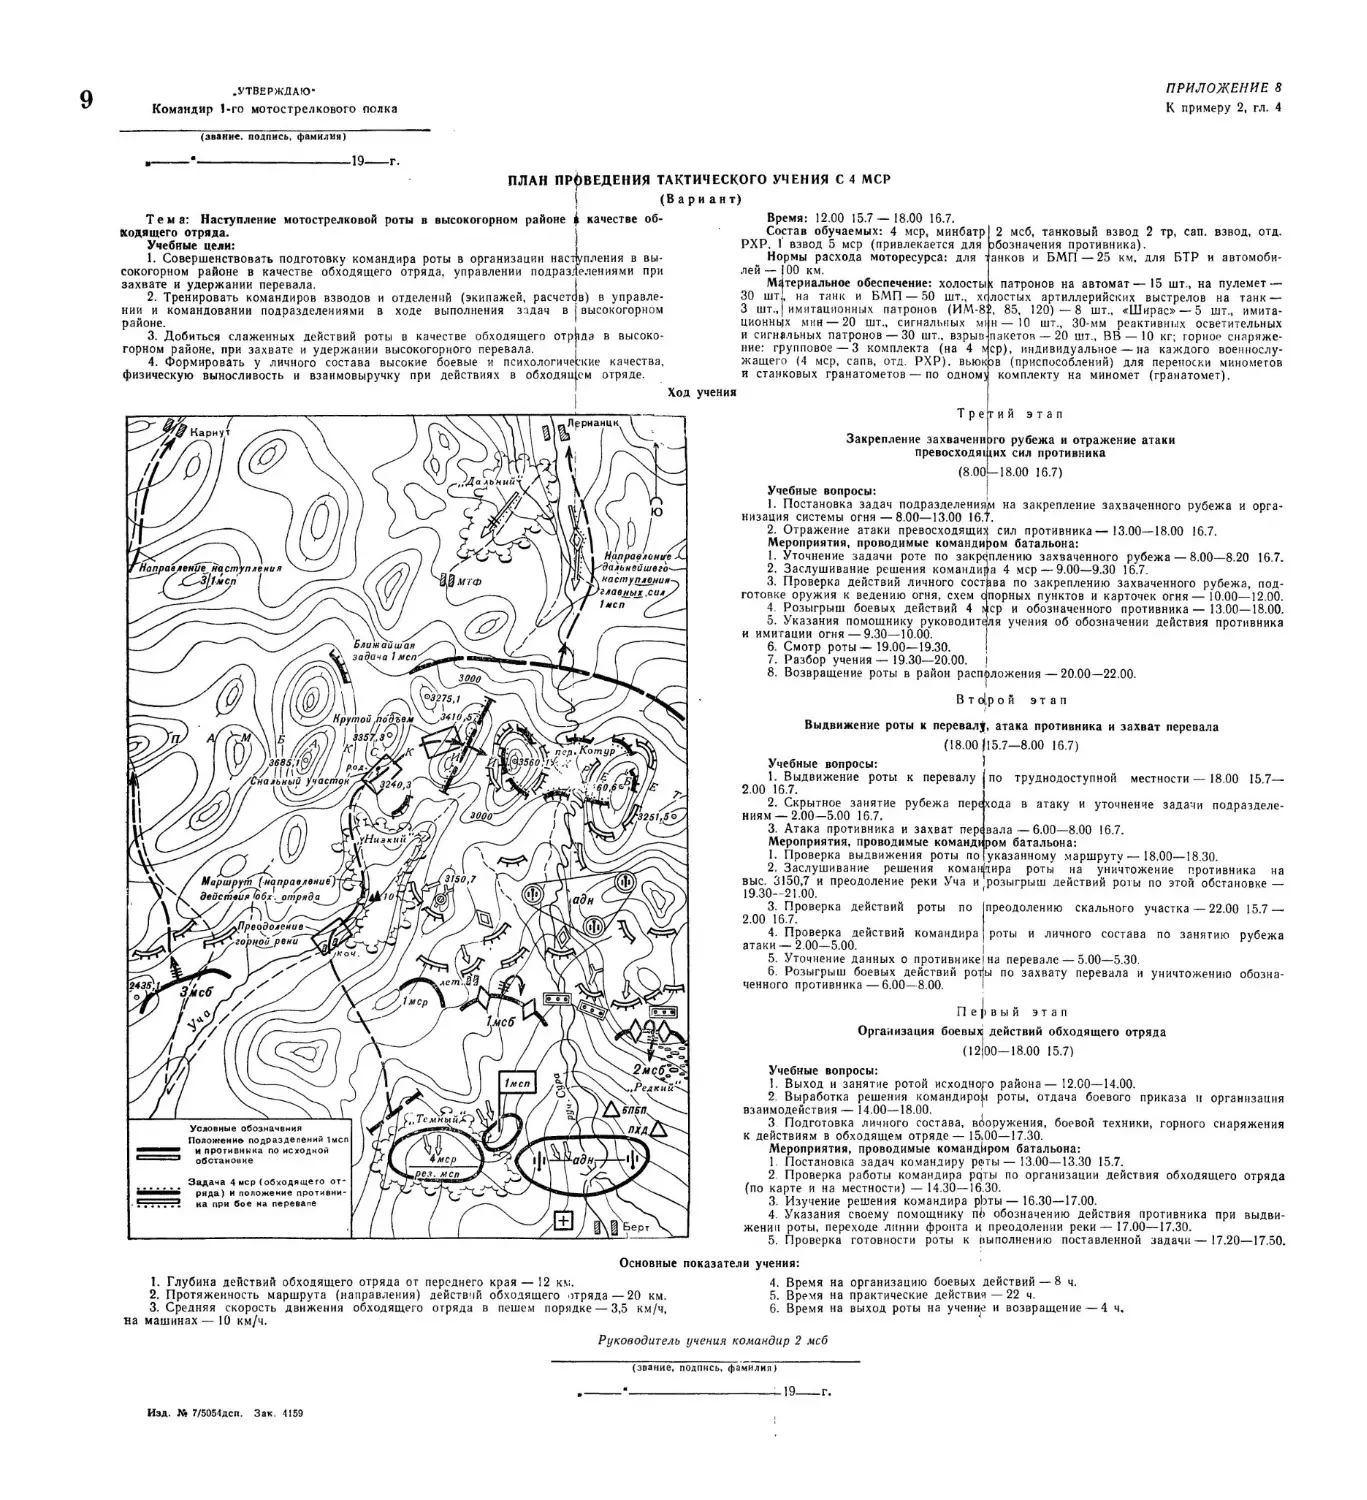 Методическое пособие Обучение мотострелковых подразделений боевым действиям в горах (1979)_169